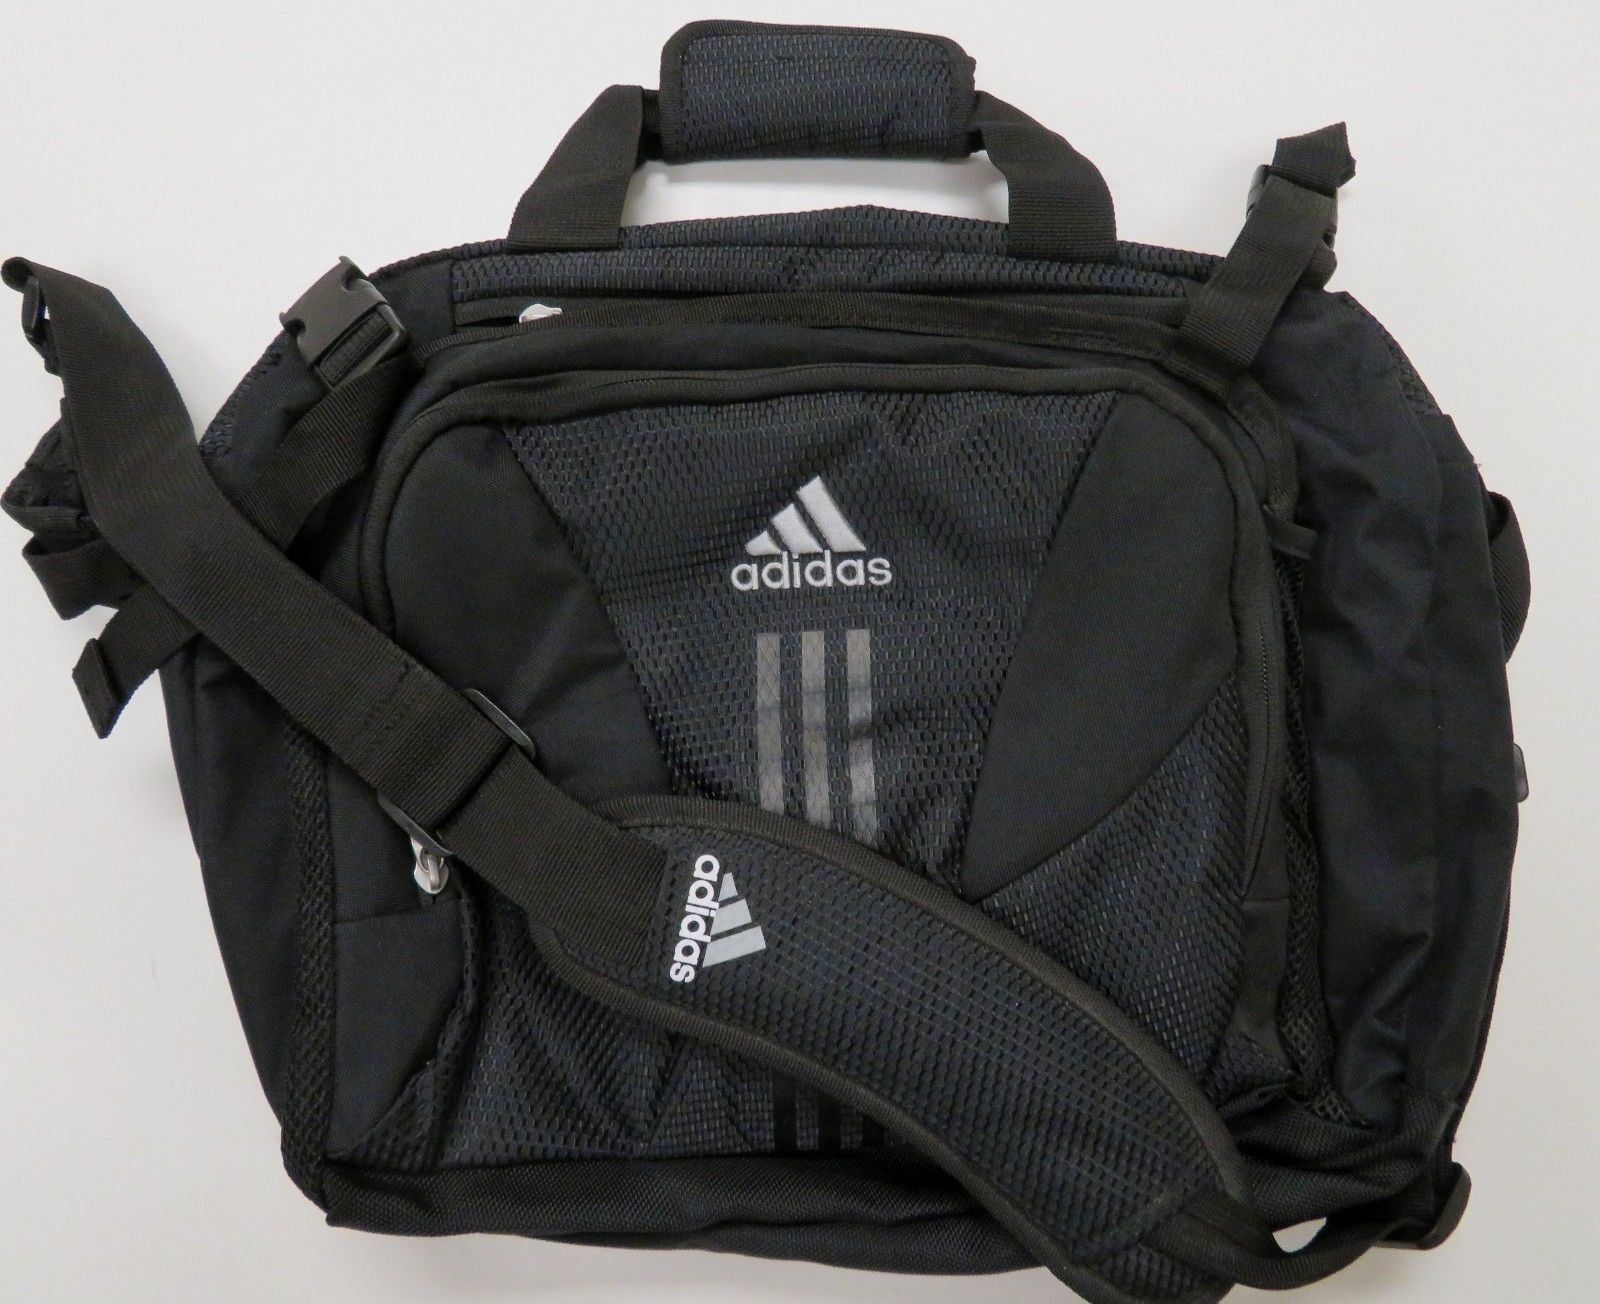 Adidas Laptop Bag Case Messenger Shoulder Bag Black Load Spring ...